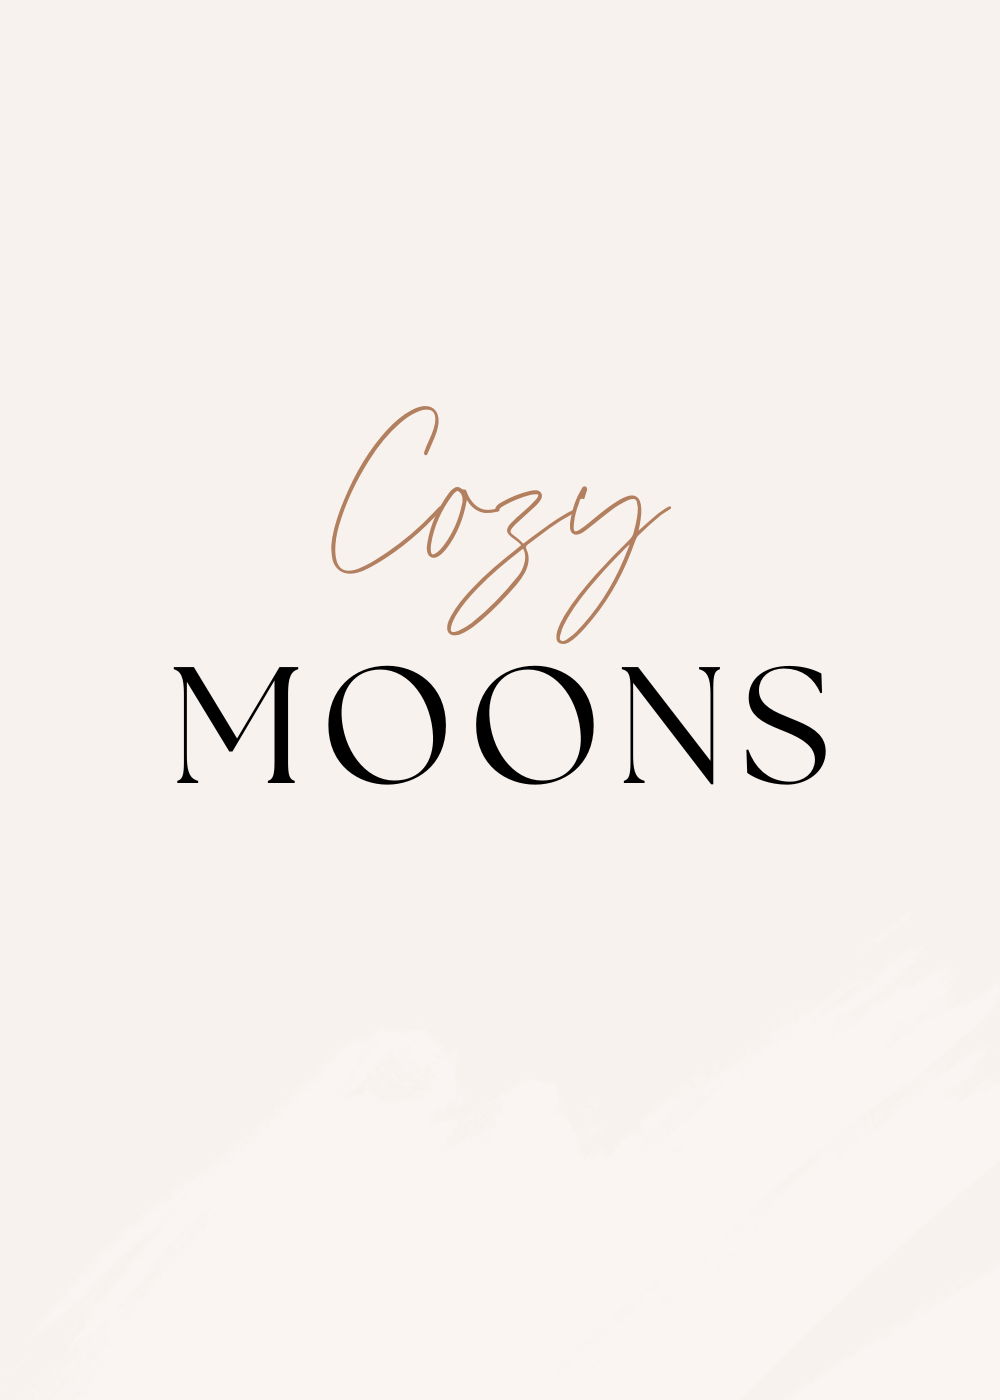 Cozy Moons